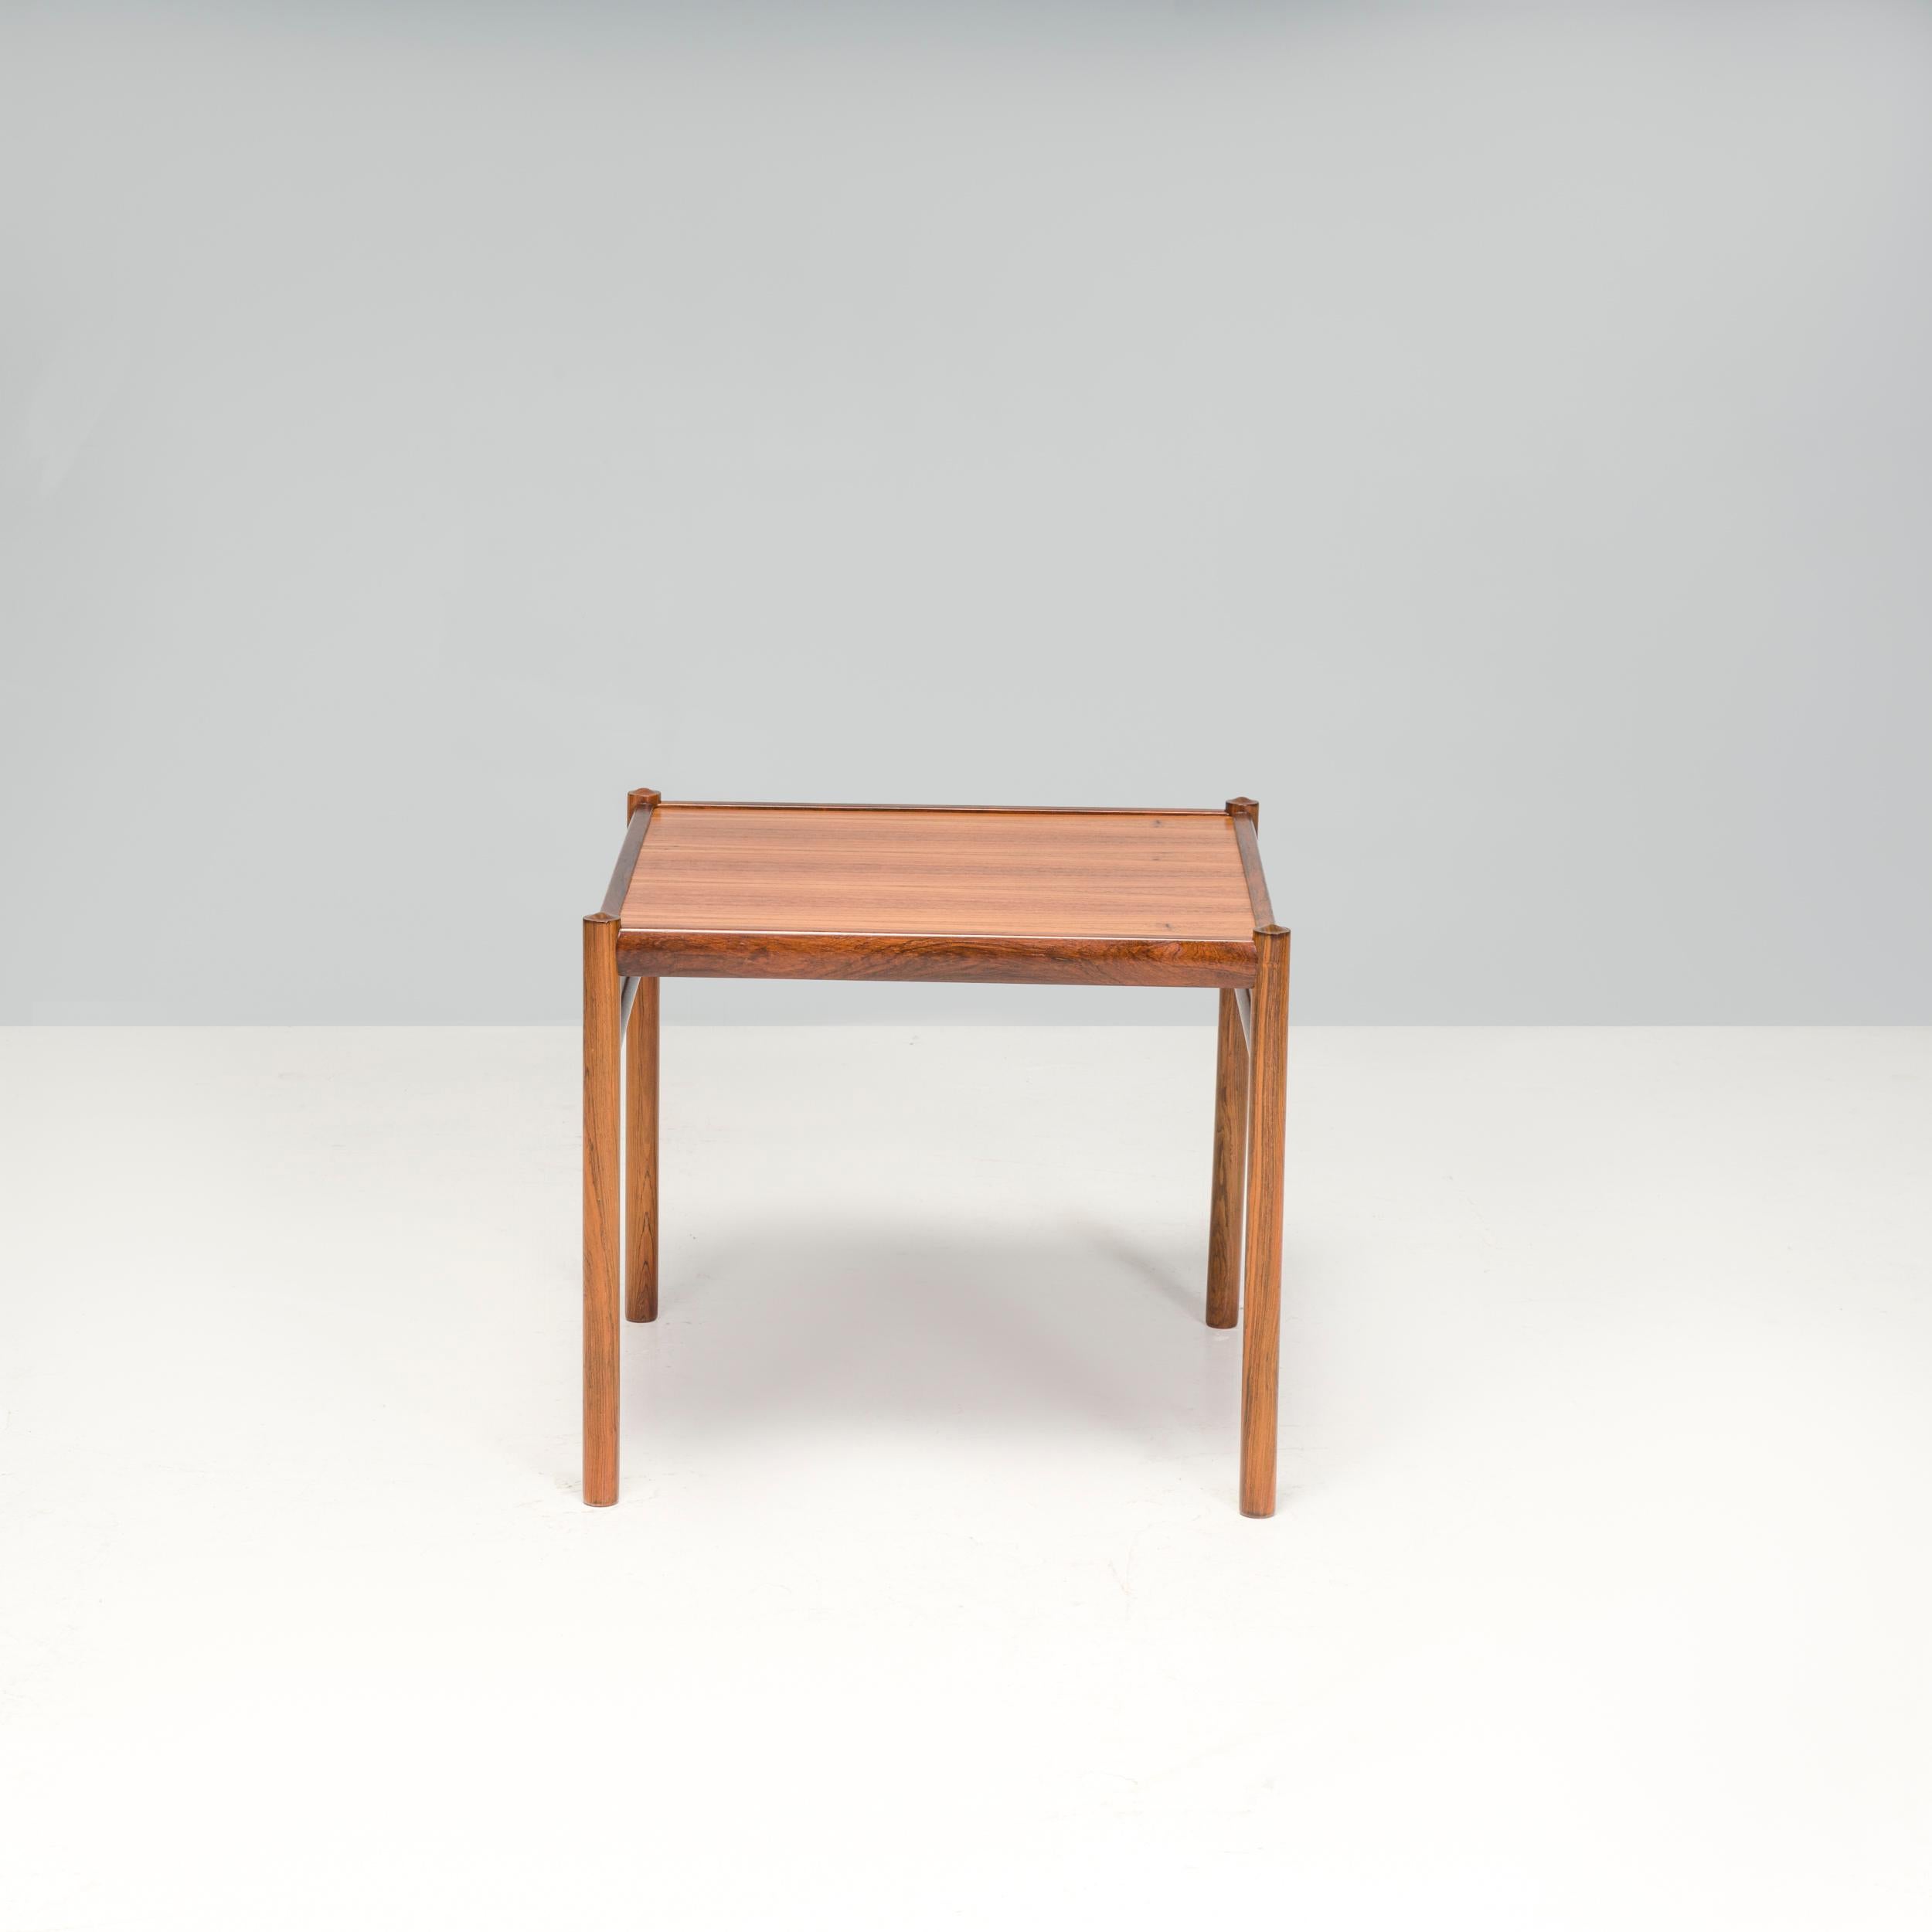 La table basse Coloni, conçue par Ole Wanscher en 1964. Le design simple et intemporel de la table d'appoint soutient l'expression visuelle de la série Coloni et constitue un point focal harmonieux pour l'ensemble de la série.

Les designs